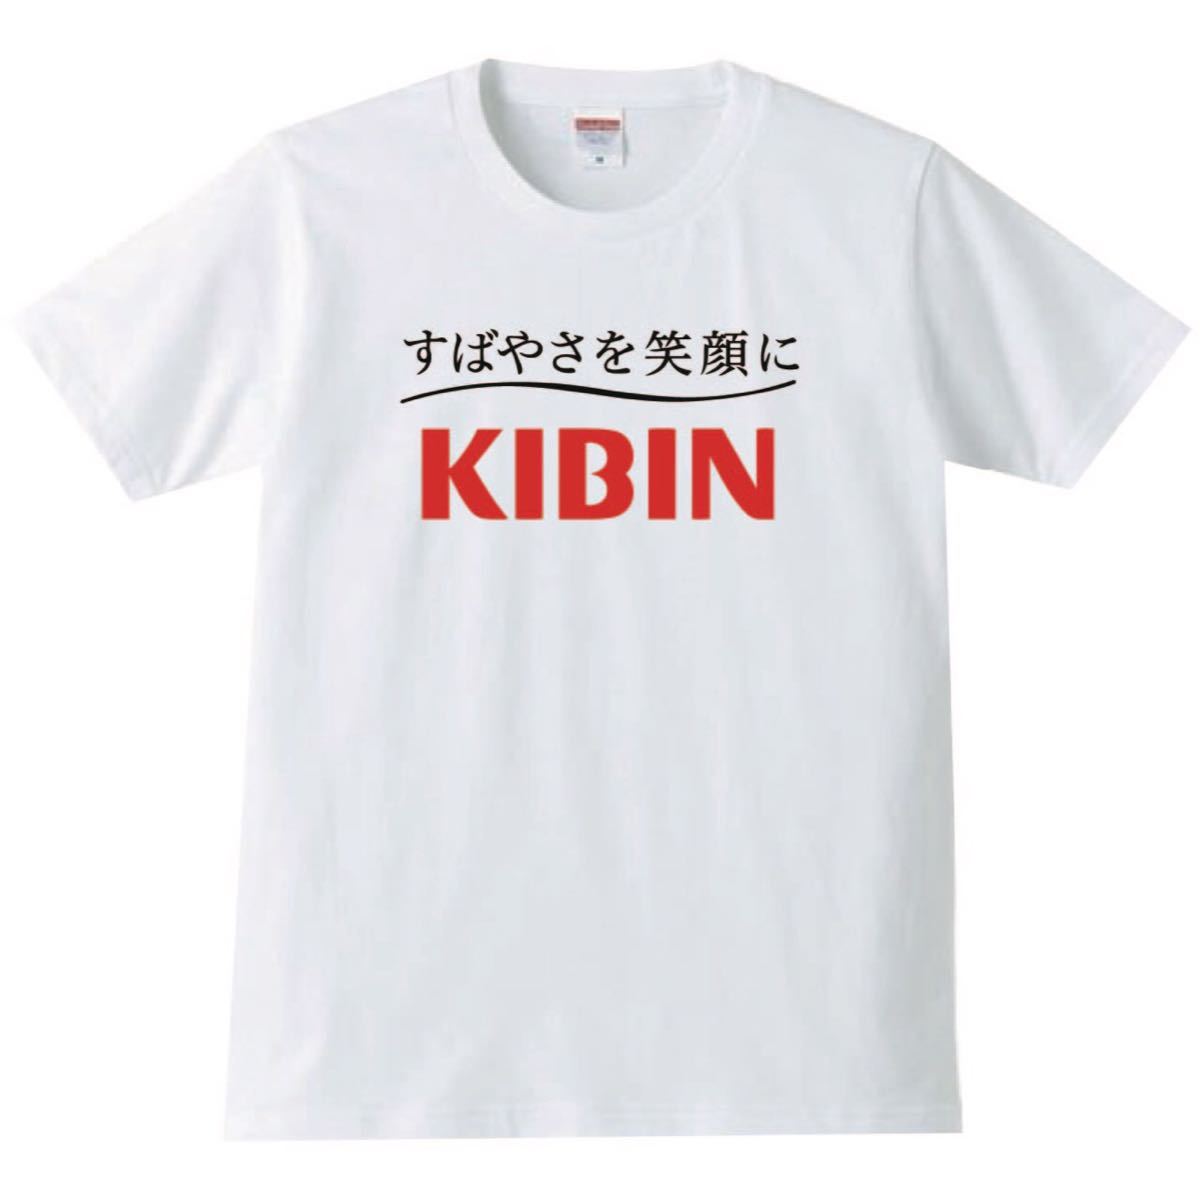 【送料無料】【新品】KIBIN キビン Tシャツ パロディ おもしろ プレゼント メンズ 白 XLサイズ_画像1